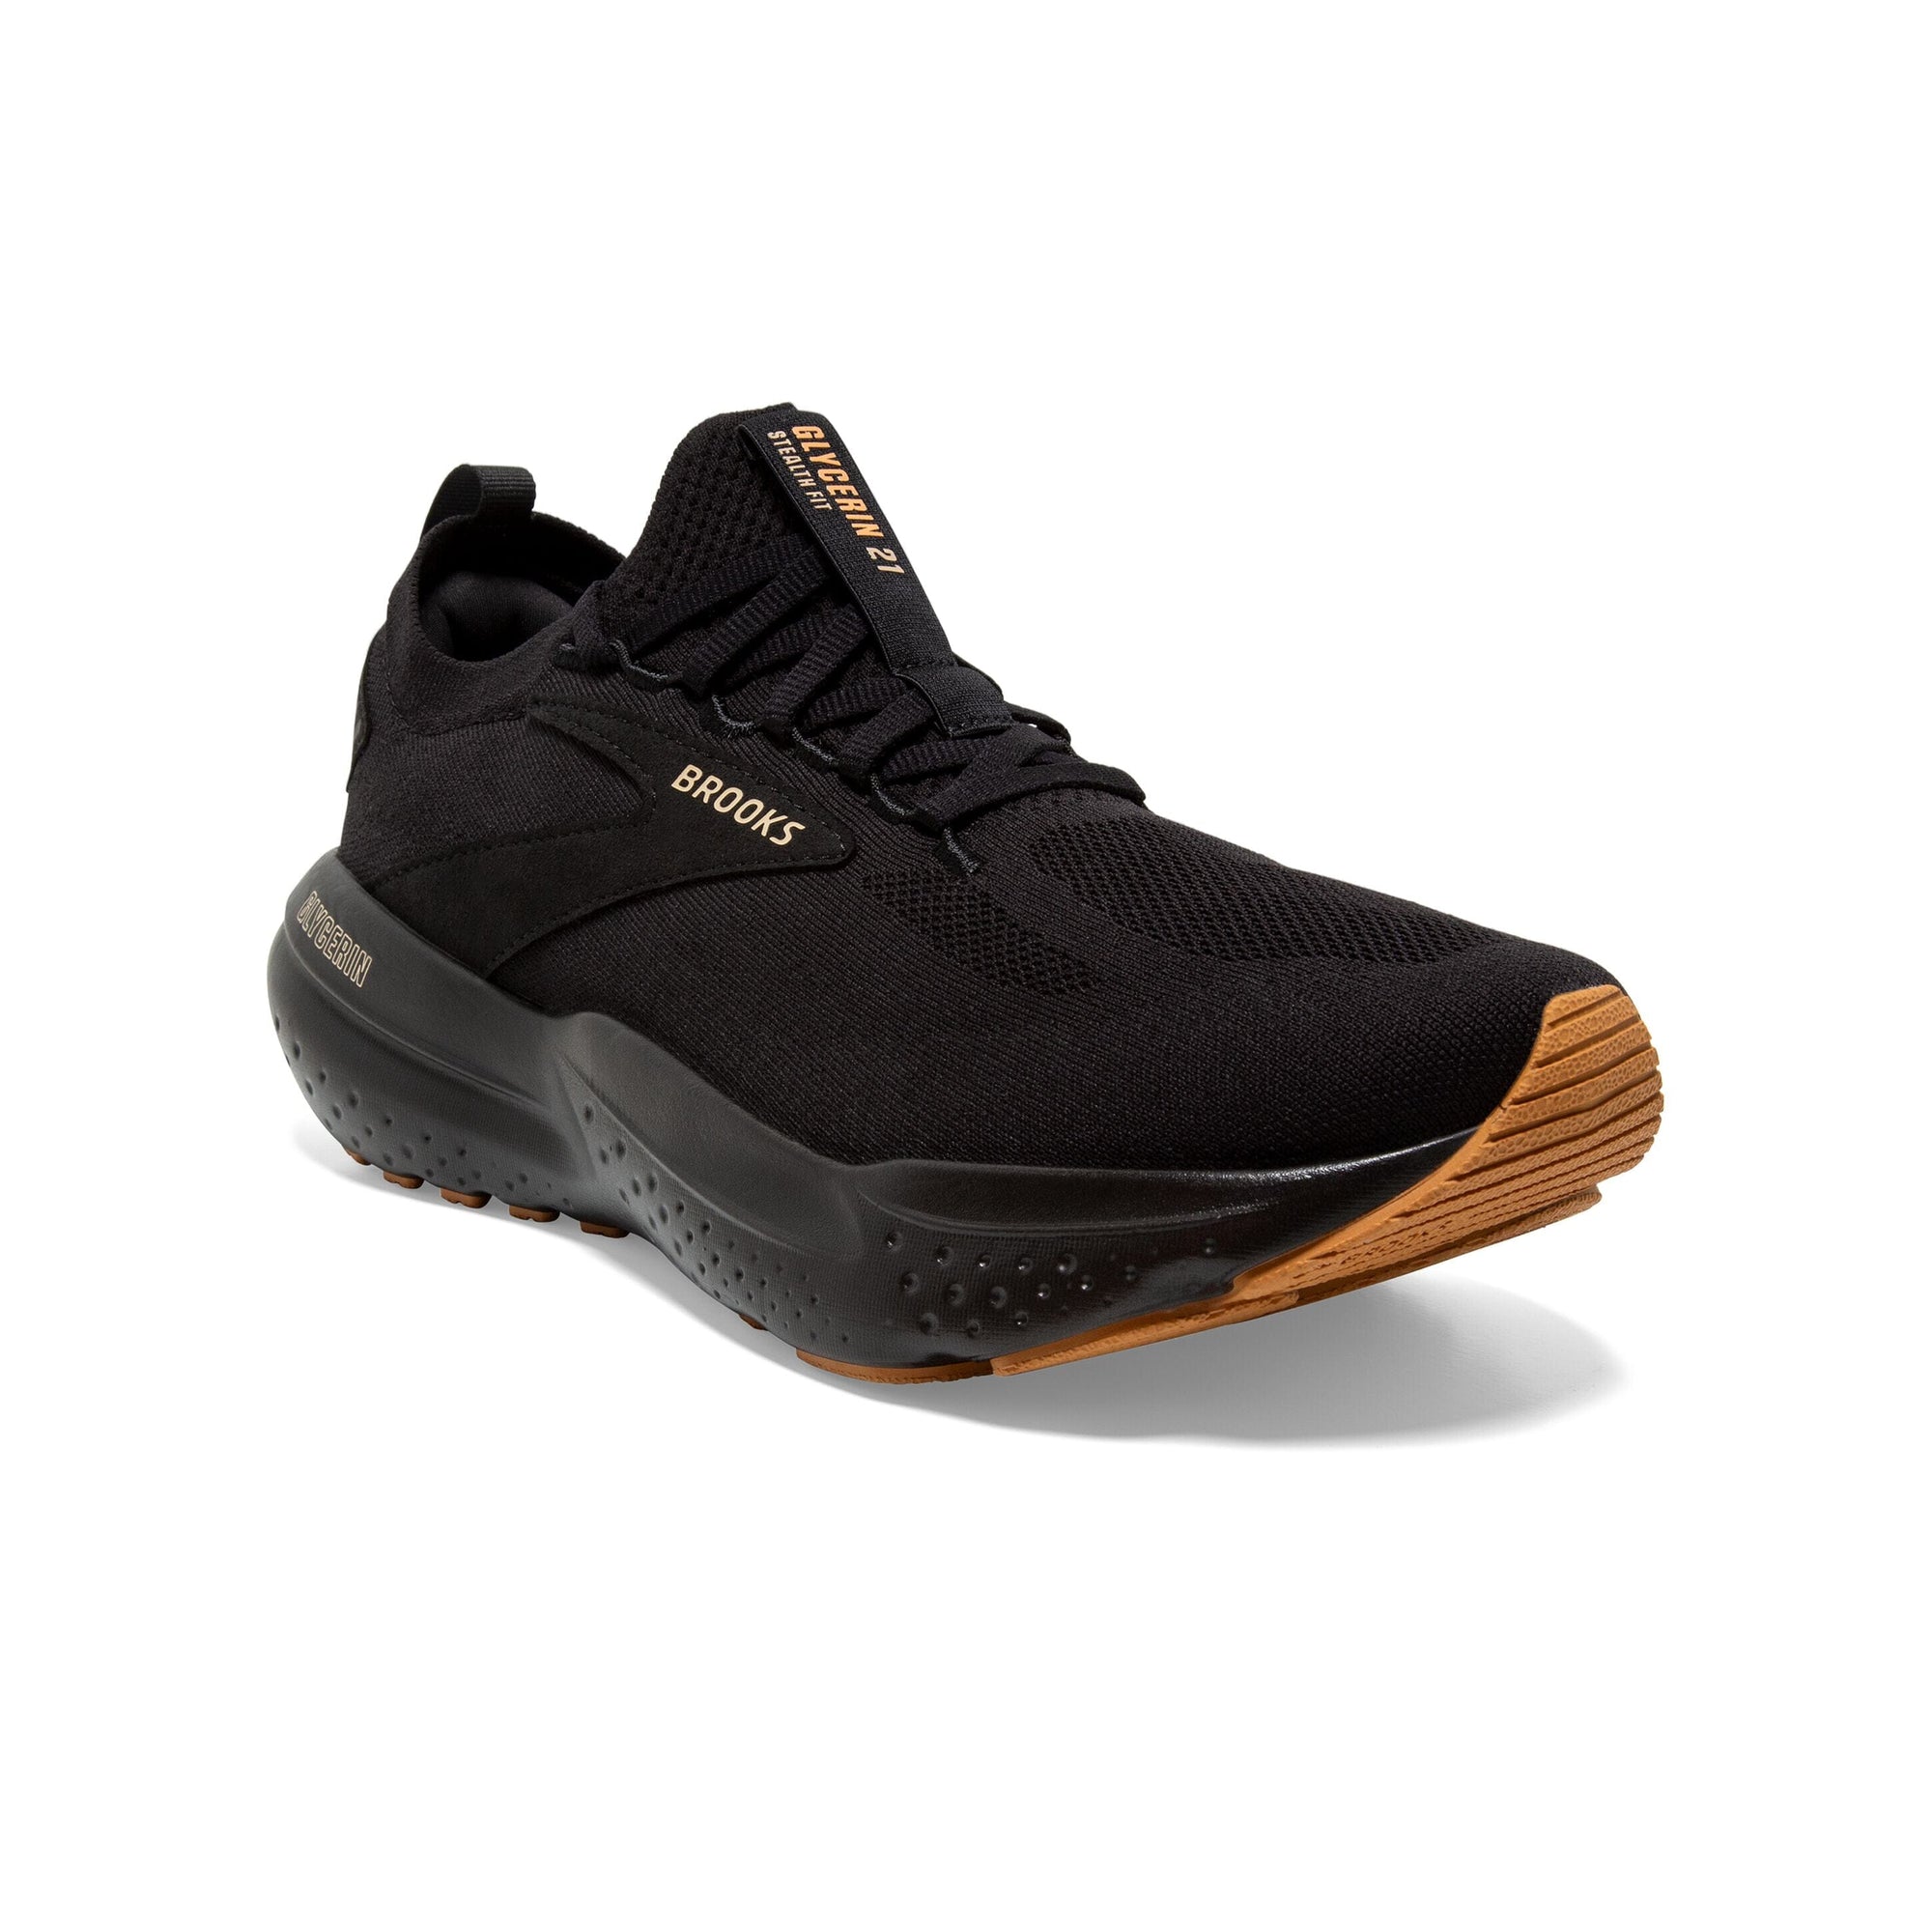 Brooks Men's Glycerin 21 StealthFit Road Running Shoes Black/Cream/Biscuit Regular (D) US８.5